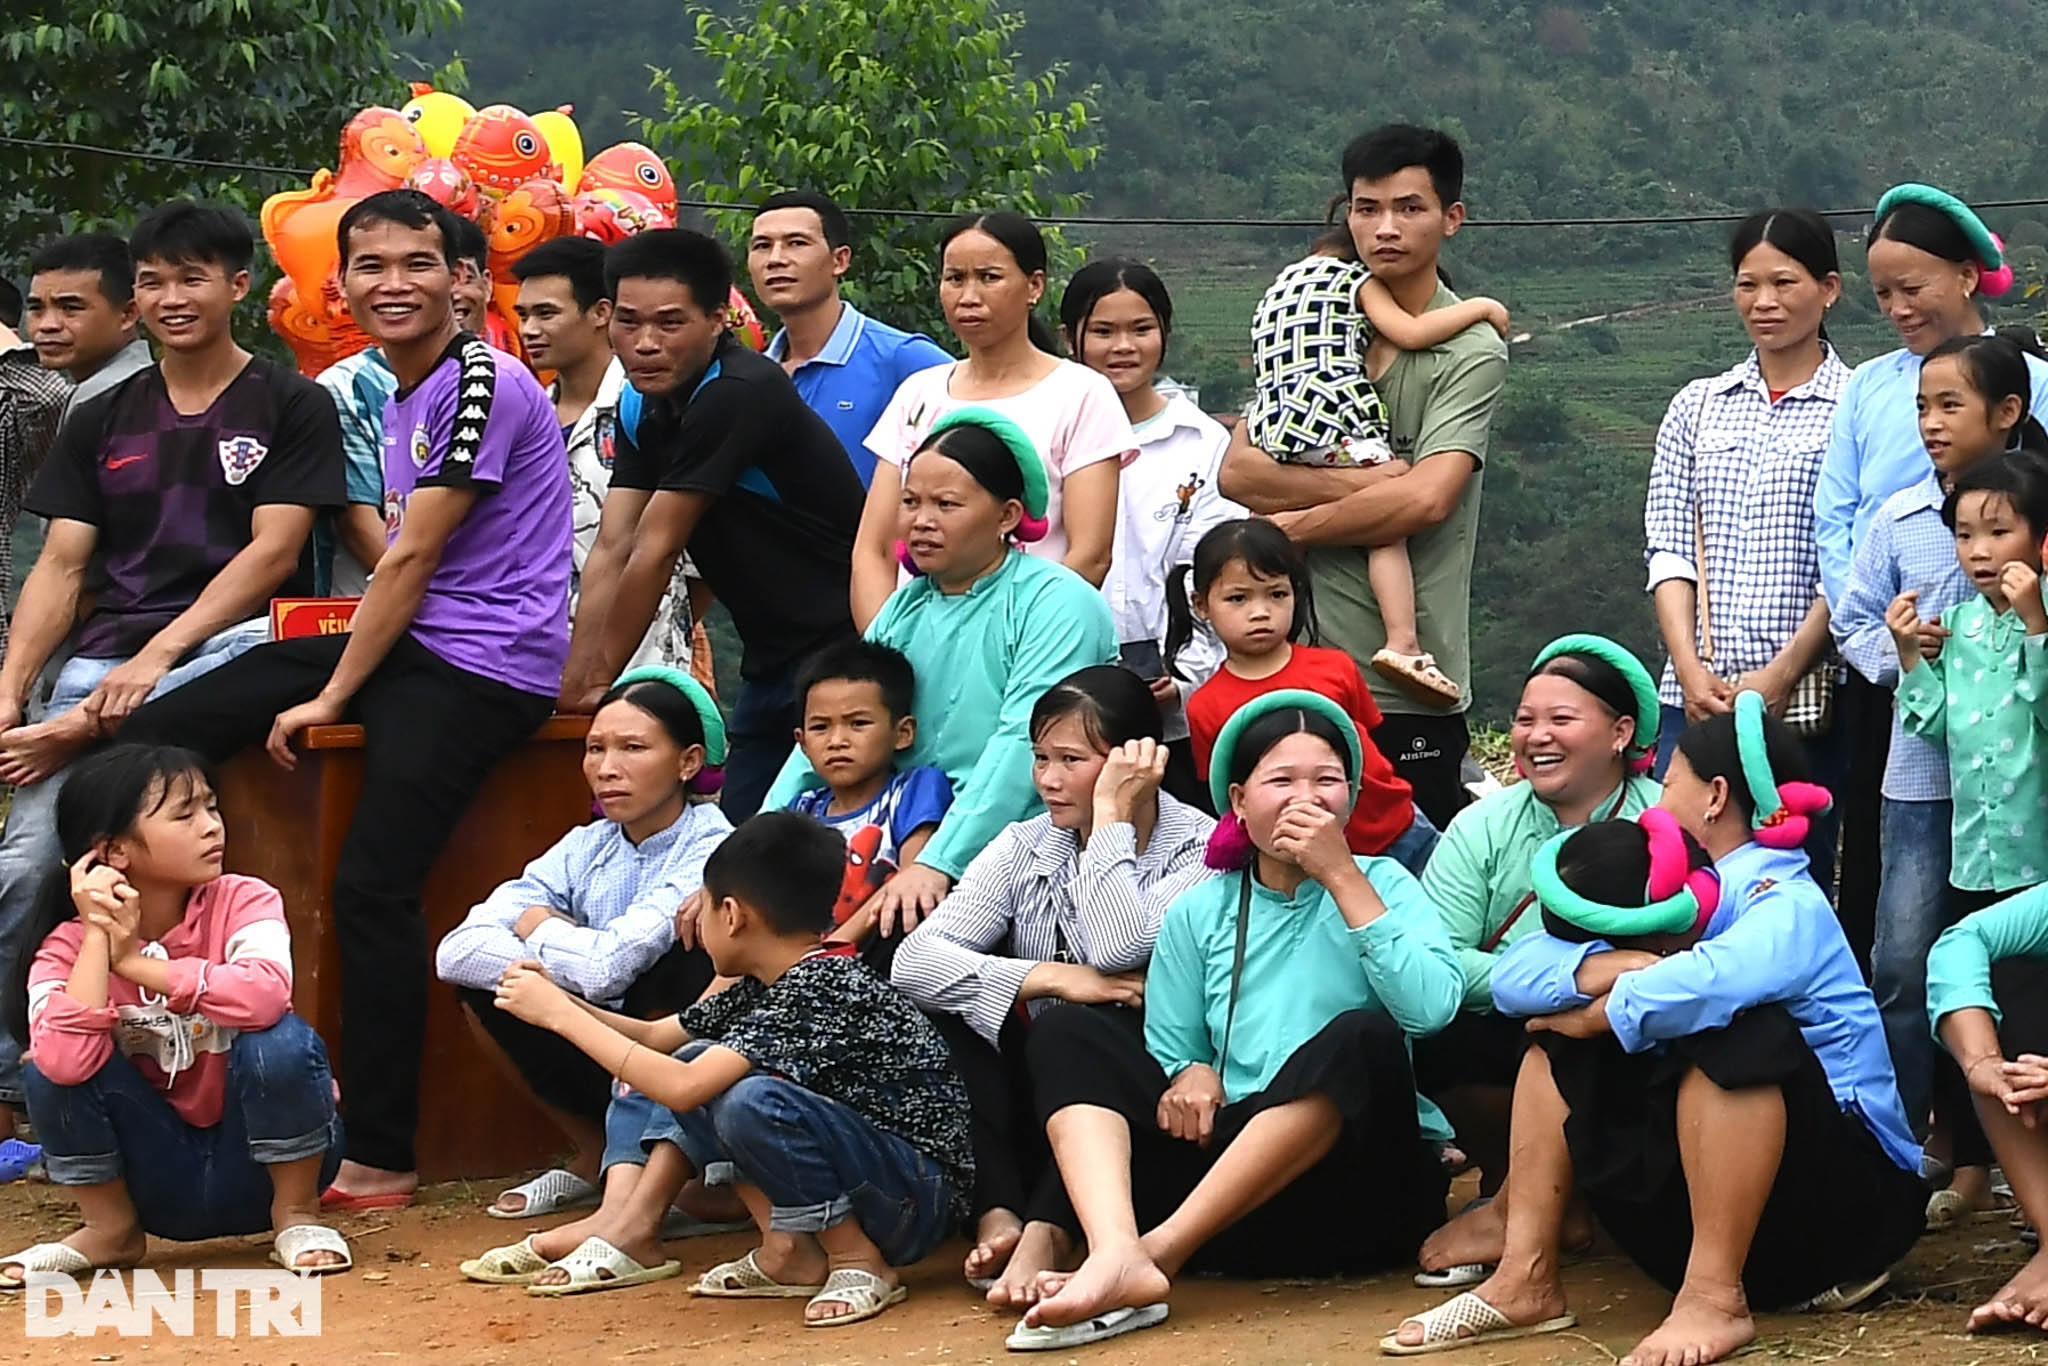 Ngắm các chị em dân tộc mặc váy xỏ giày thi đấu bóng đá trên đỉnh núi cao - 6